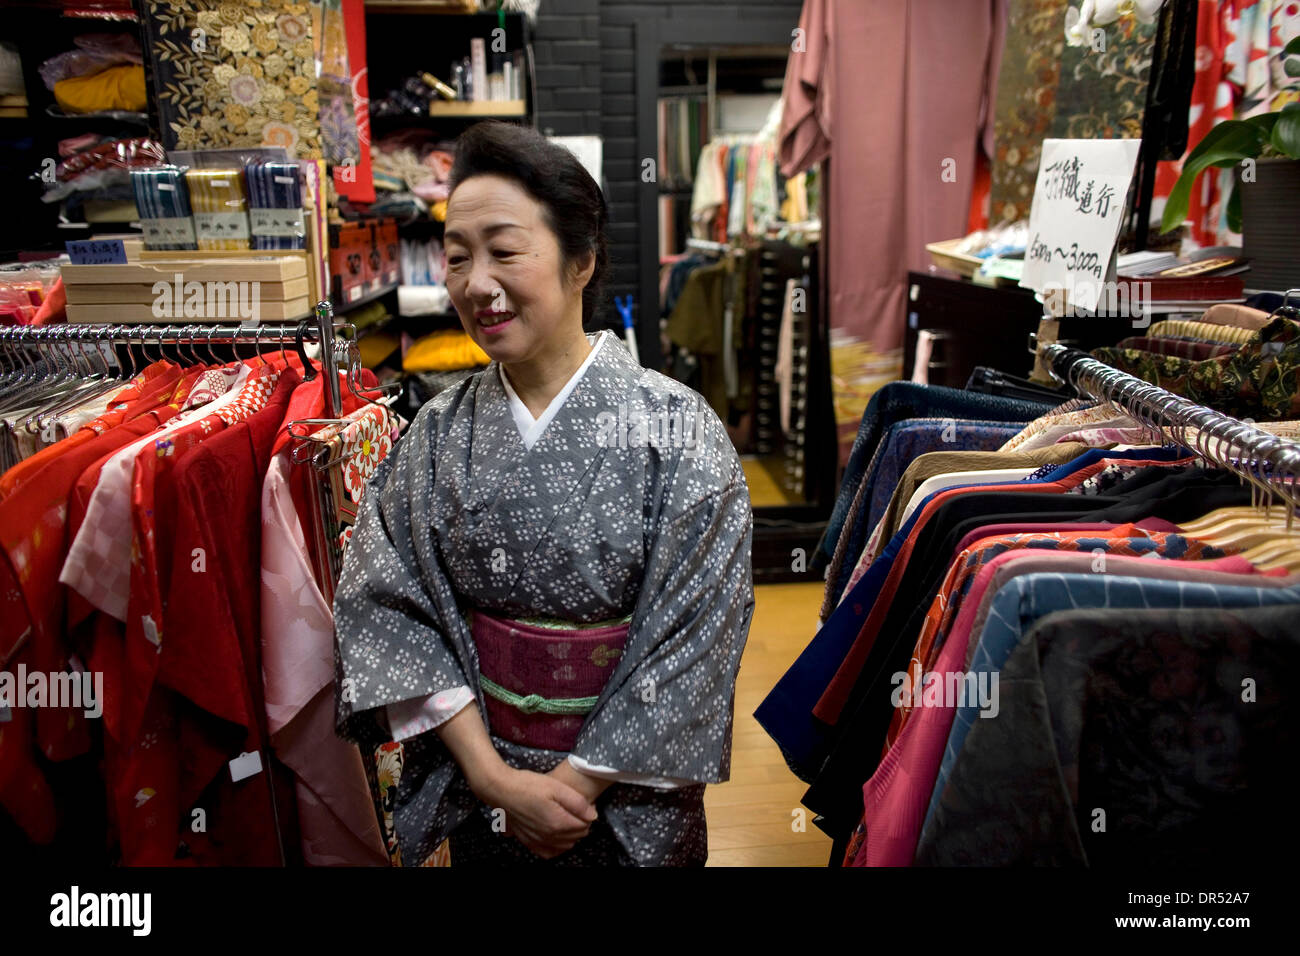 Apan - steht eine Frau unter Racks von üblichen Kleidung. Kimonos sind die traditionellen japanischen Kleiderordnung. Allerdings sind sie meist von älteren Frauen getragen. Jüngere Erwachsene bevorzugen die moderne Mode-Stil. Stockfoto